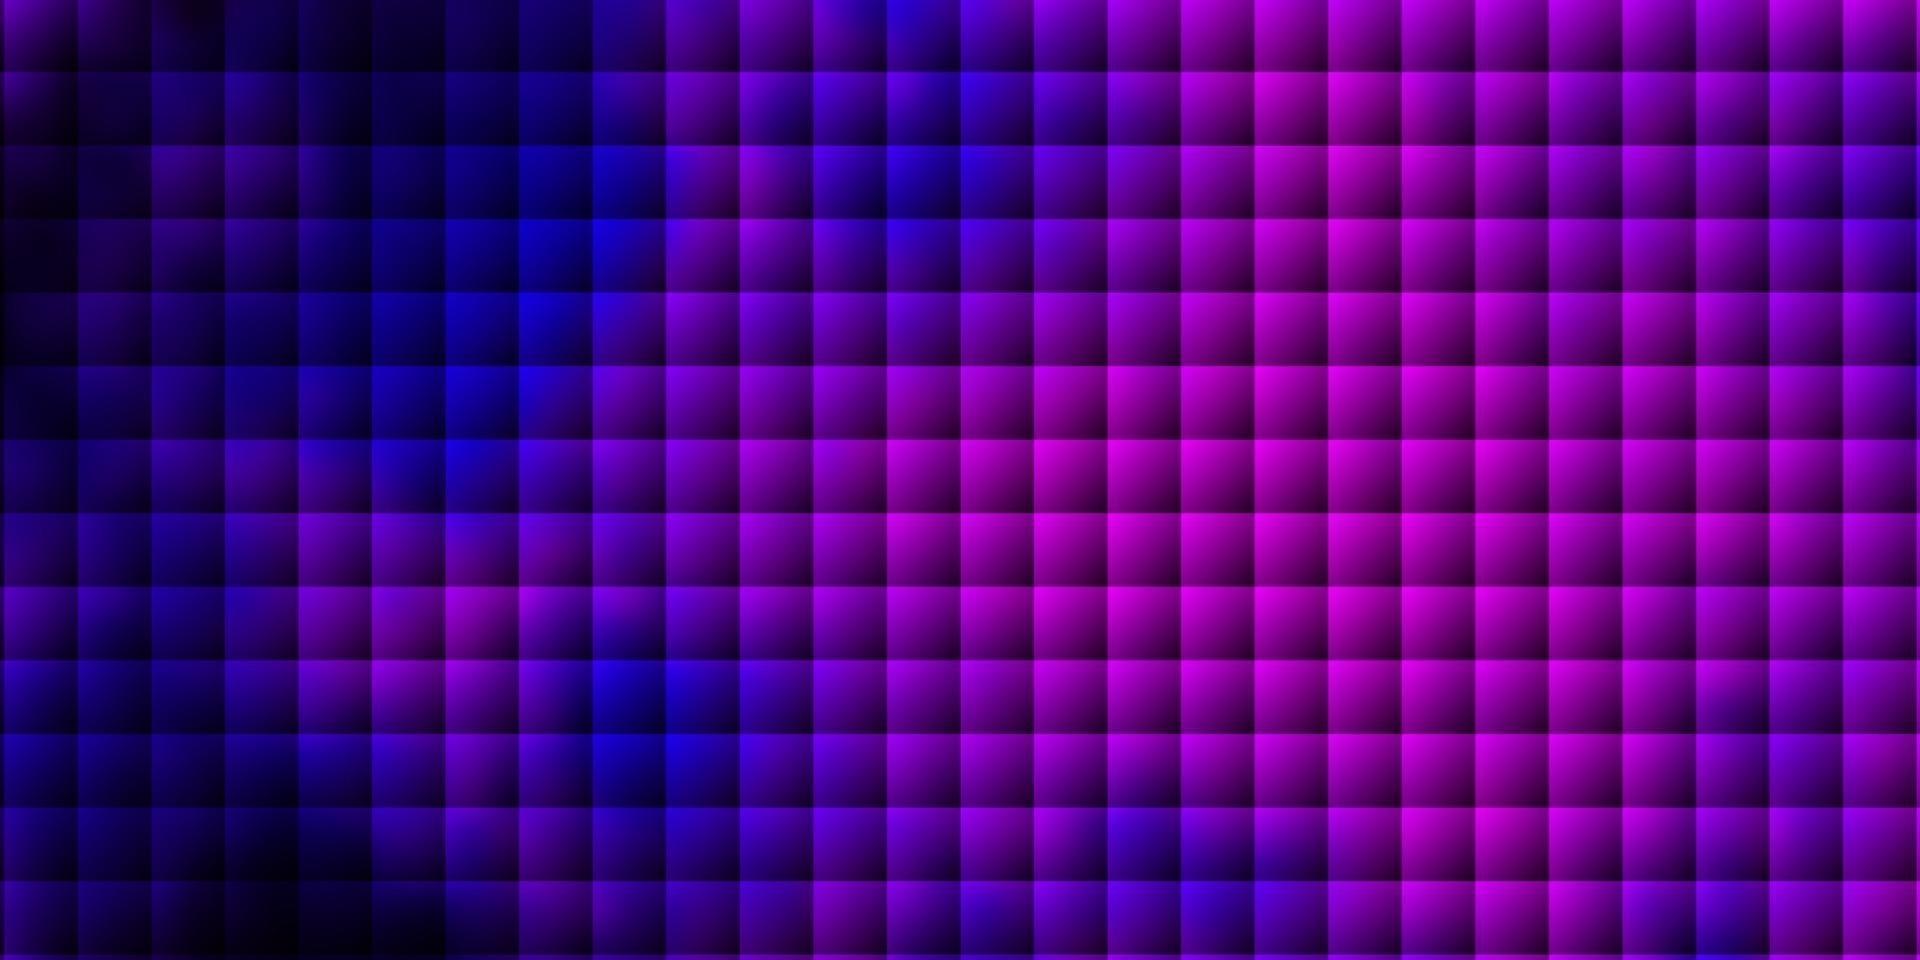 layout vettoriale viola scuro, rosa con linee, rettangoli.